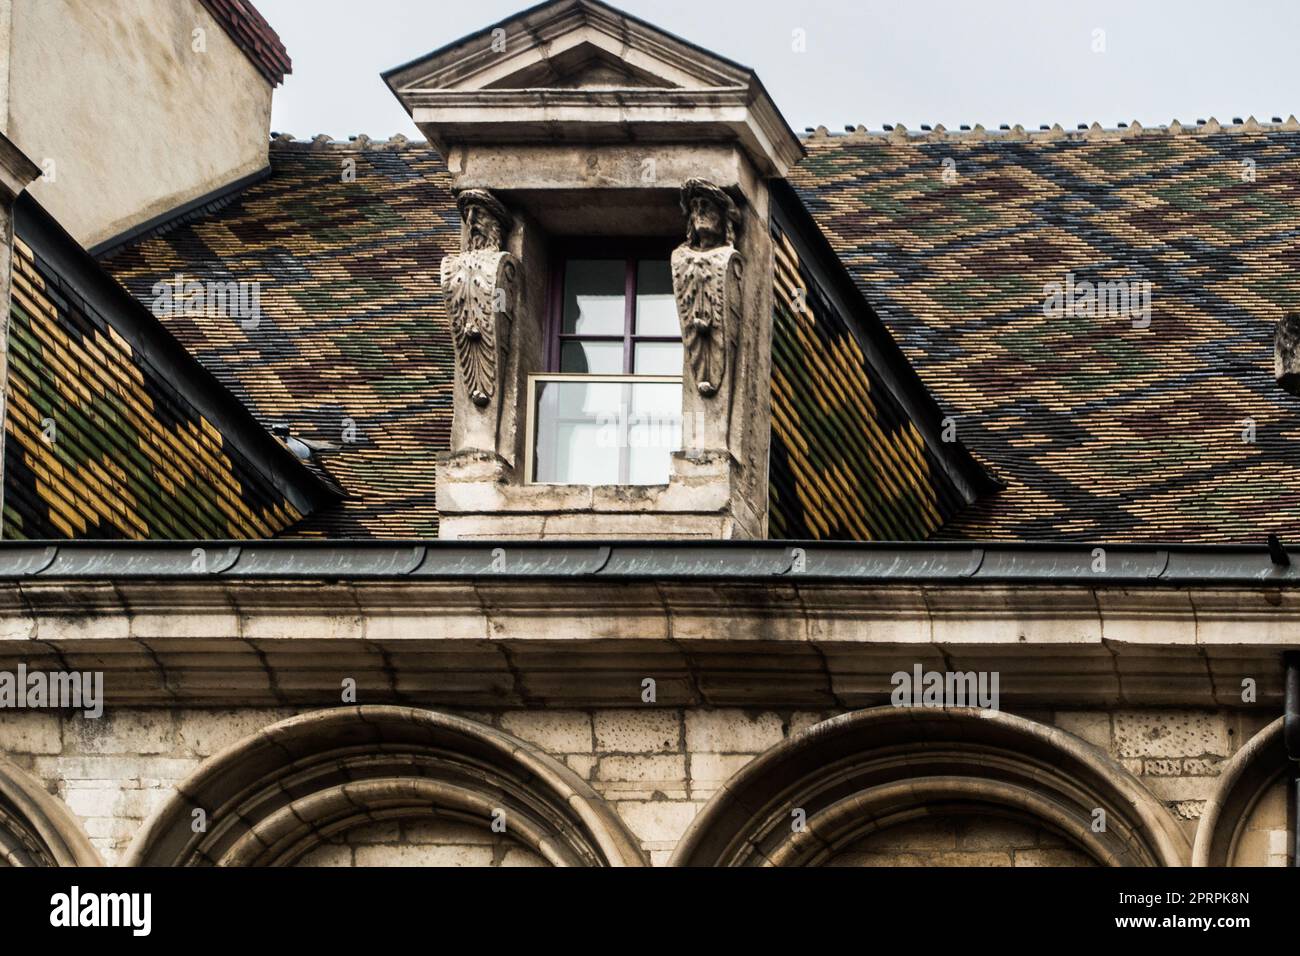 Bâtiment classique avec tuiles multicolores, Dijon, France Banque D'Images